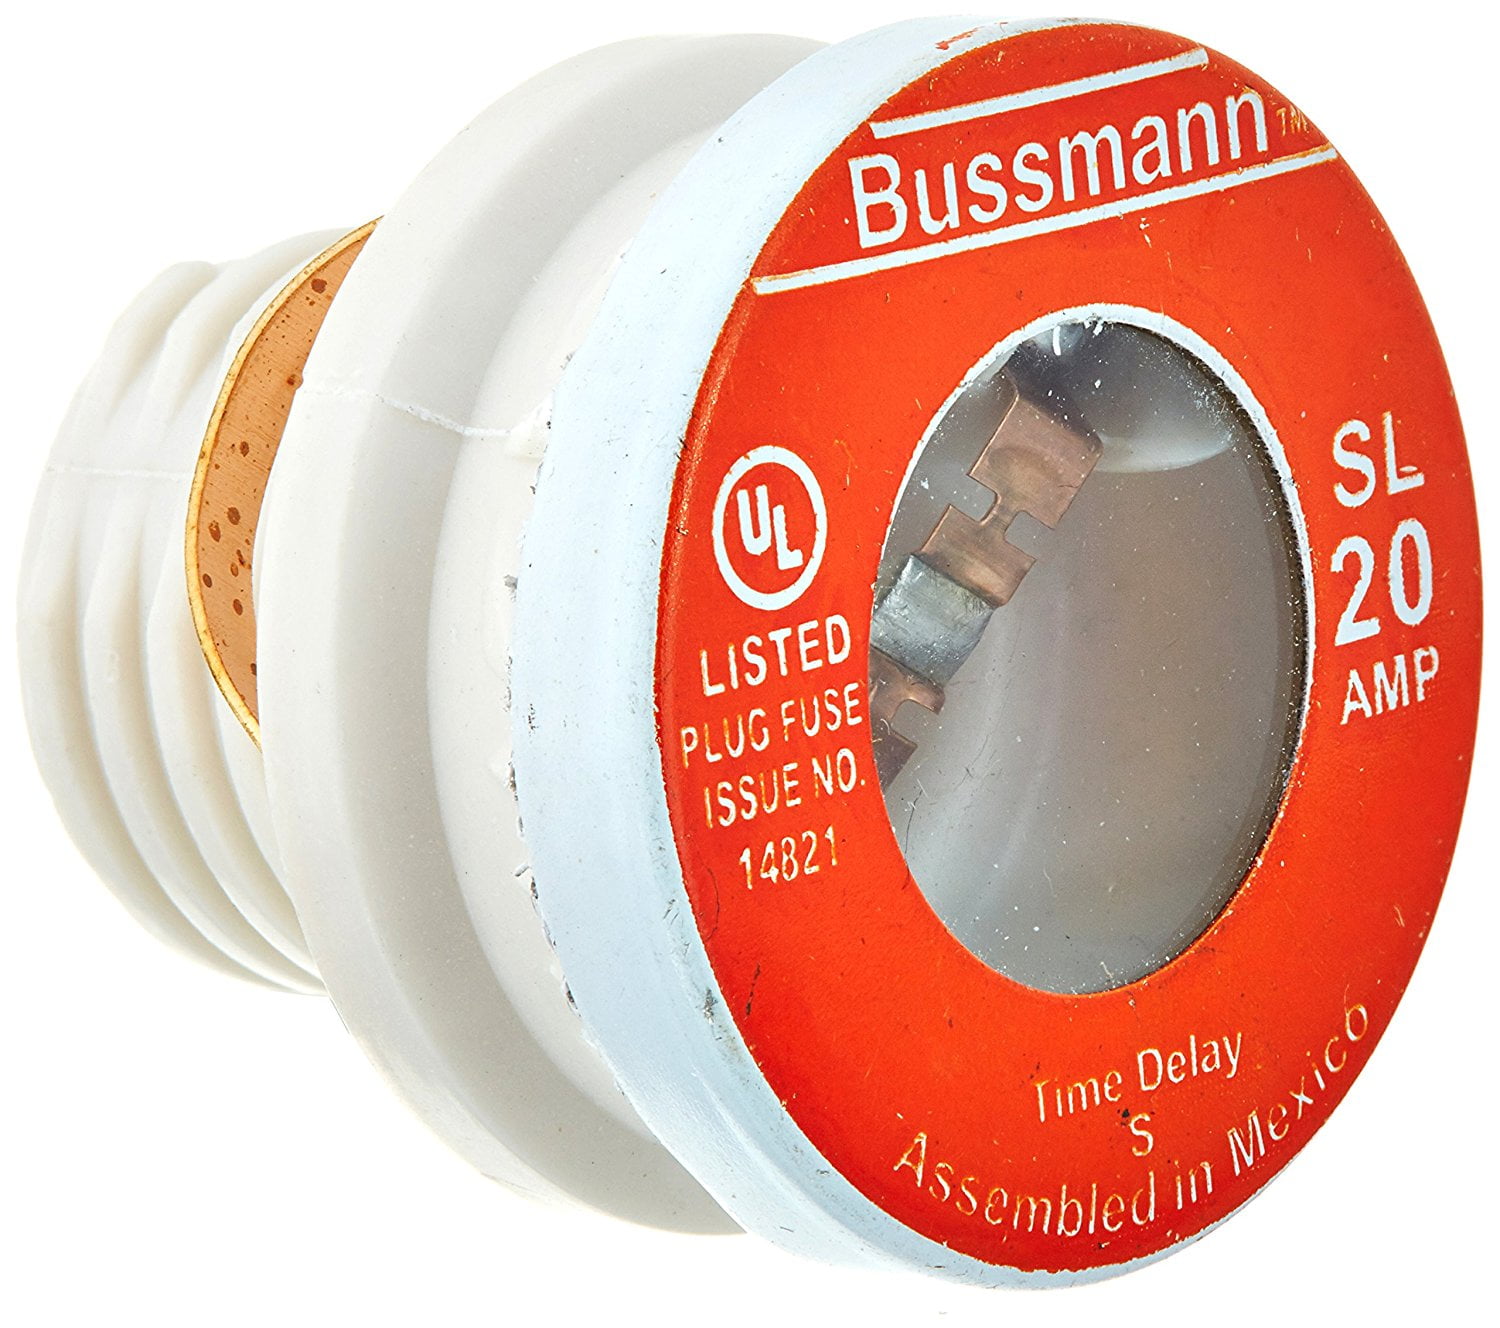 Bussmann  30 amps 125 volts Plastic  Time Delay Plug Fuse  4 pk